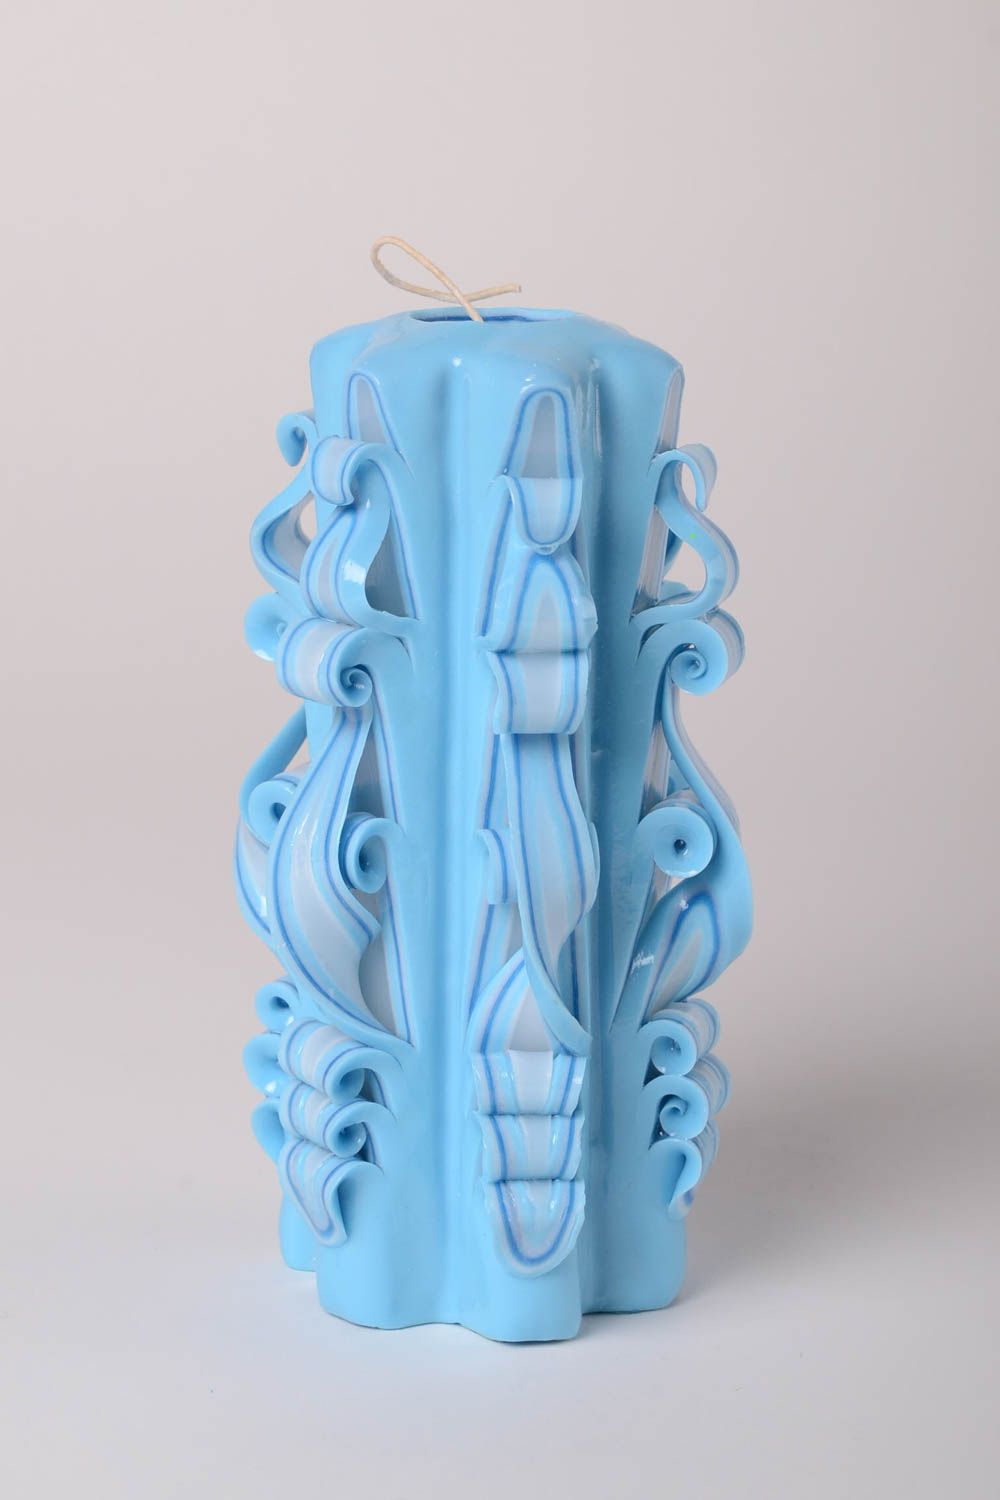 Голубая свеча ручной работы парафиновая свеча необычная цветная свеча для декора фото 1